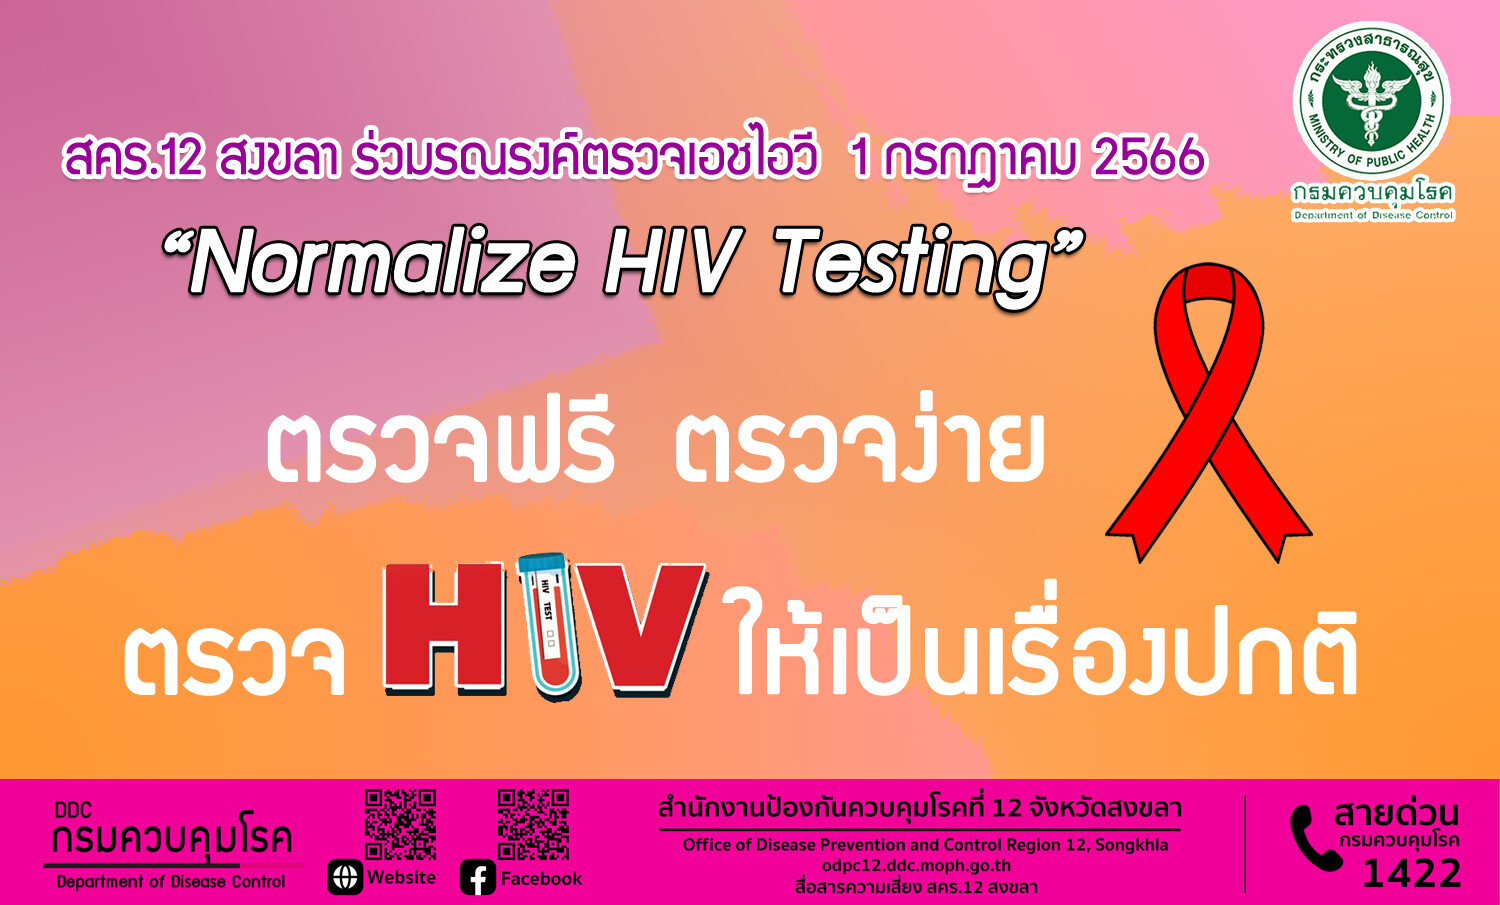 สคร.12 สงขลา ร่วมรณรงค์ตรวจเอชไอวี 1 กรกฎาคม 2566 "Normalize HIV Testing : ตรวจฟรี ตรวจง่าย ตรวจเอชไอวีให้เป็นเรื่องปกติ"